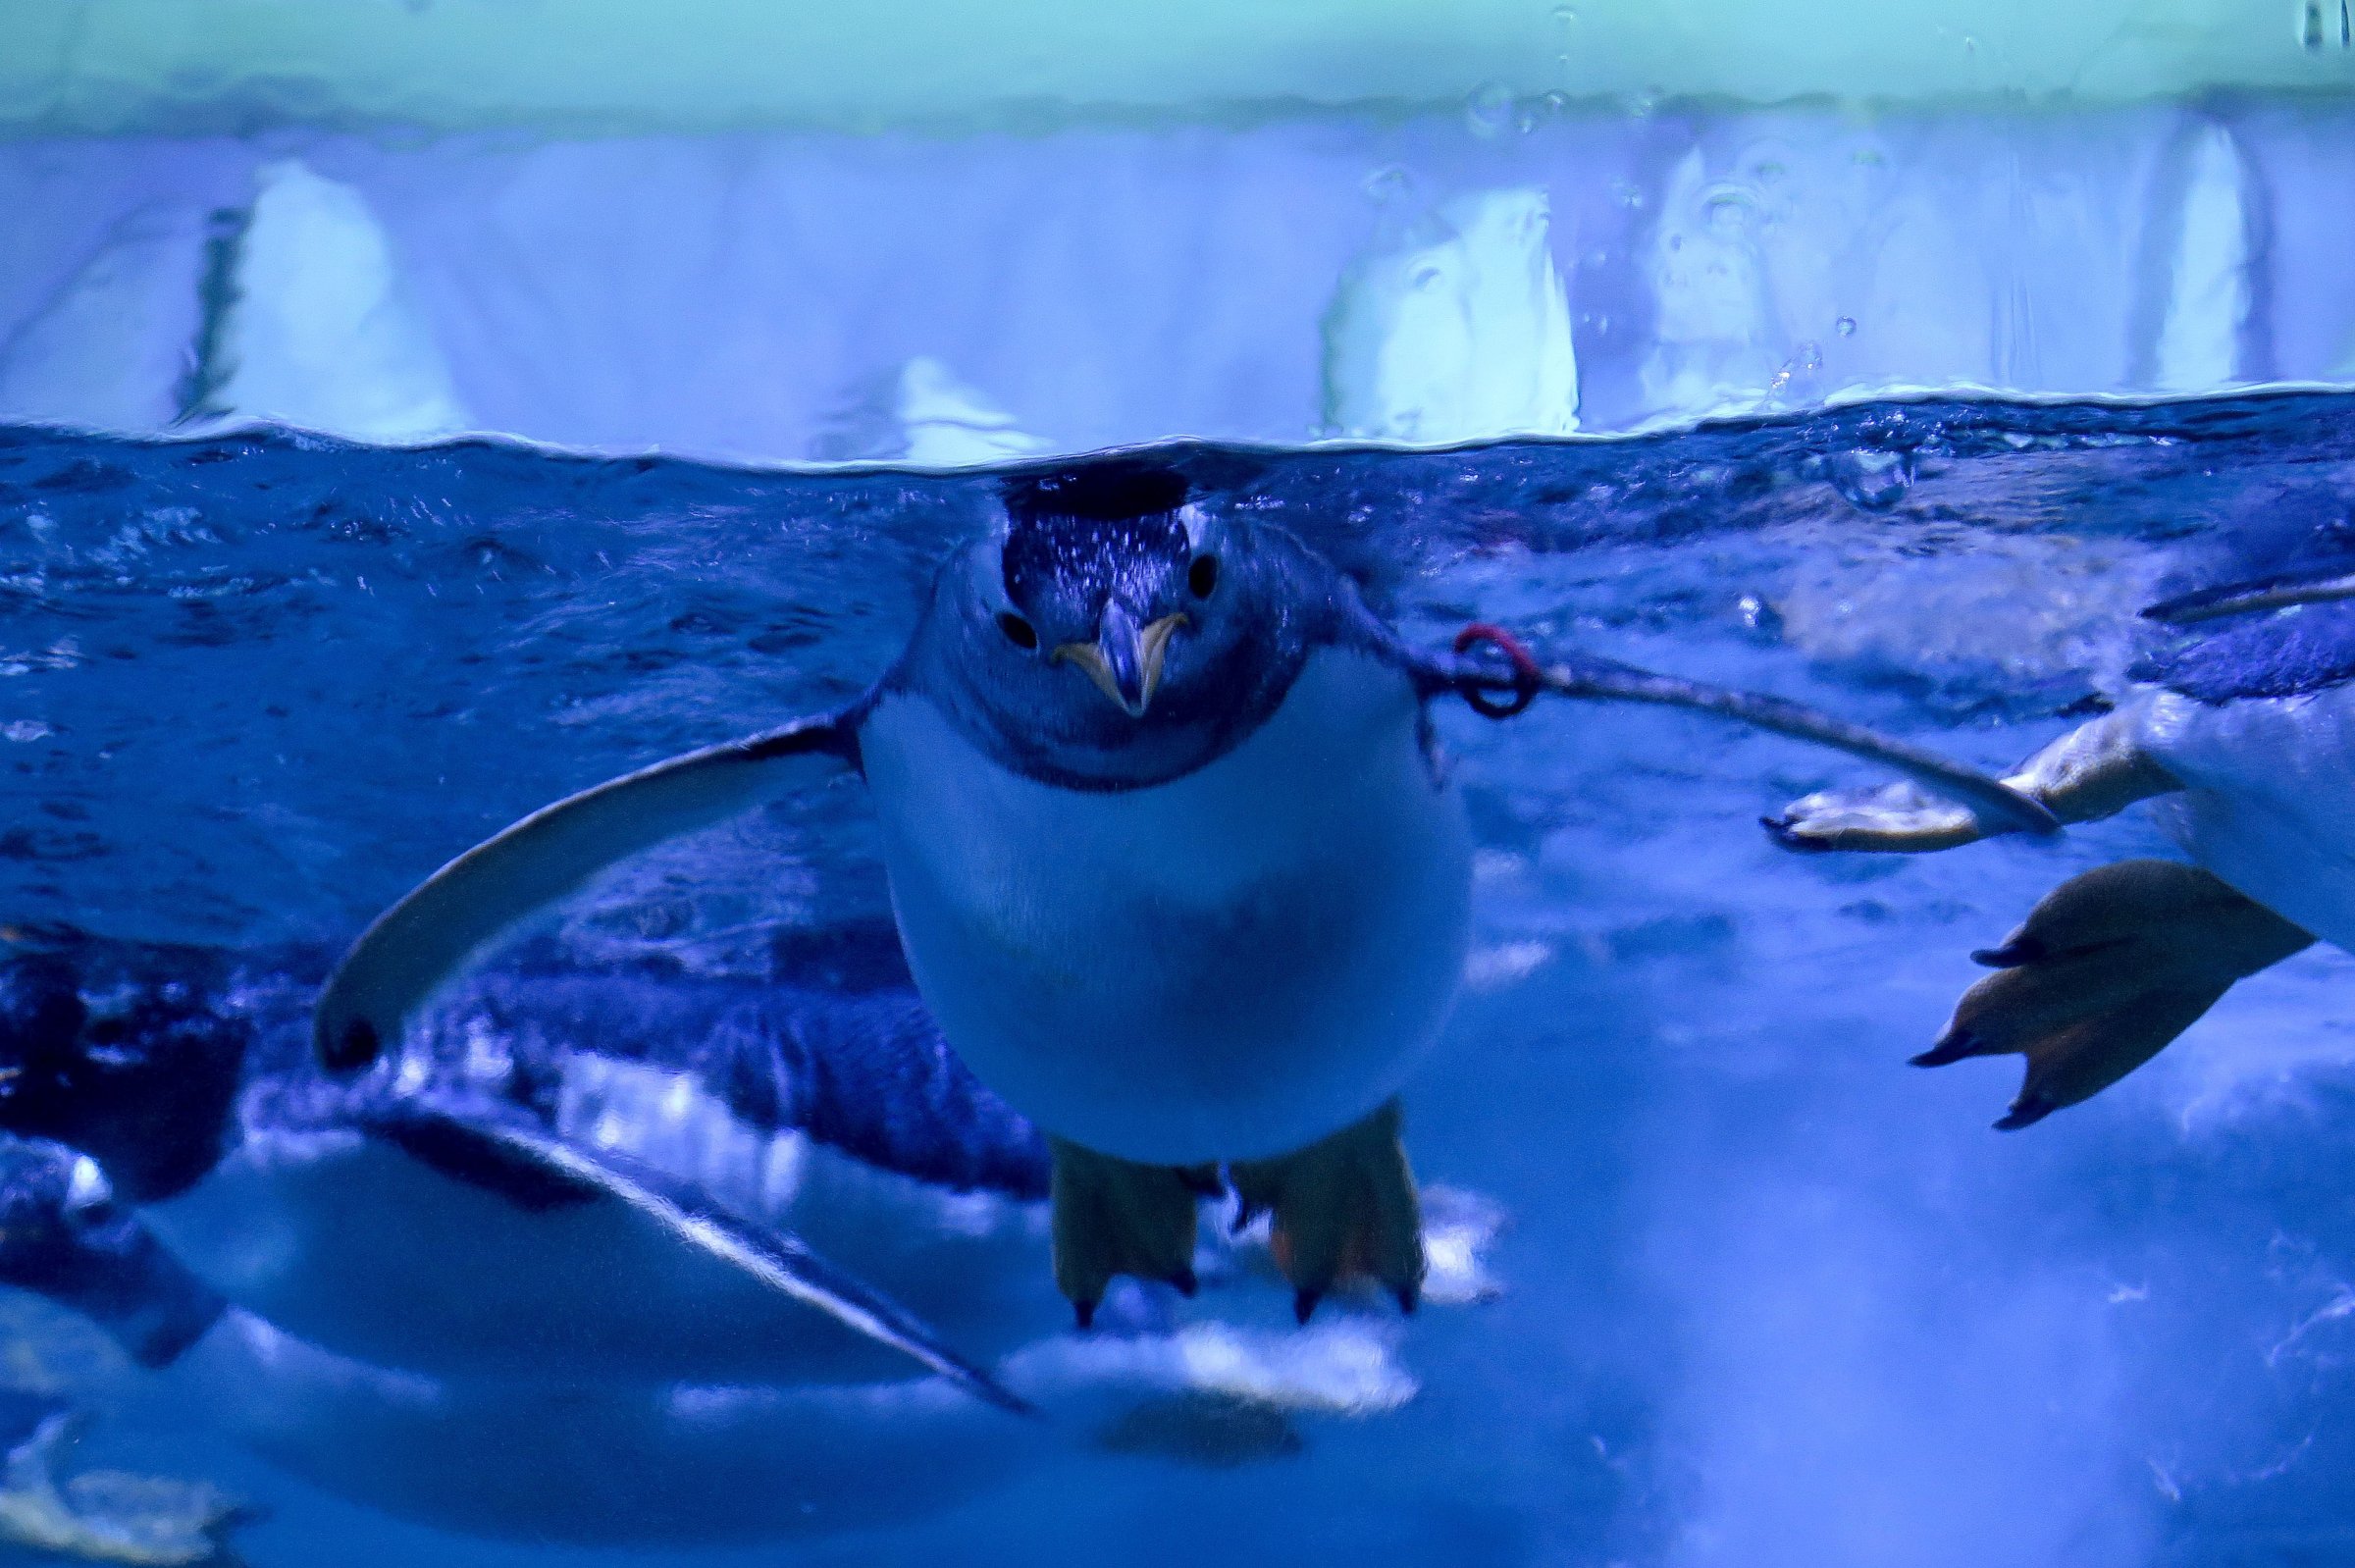 Gentoo penguins at Istanbul Aquarium